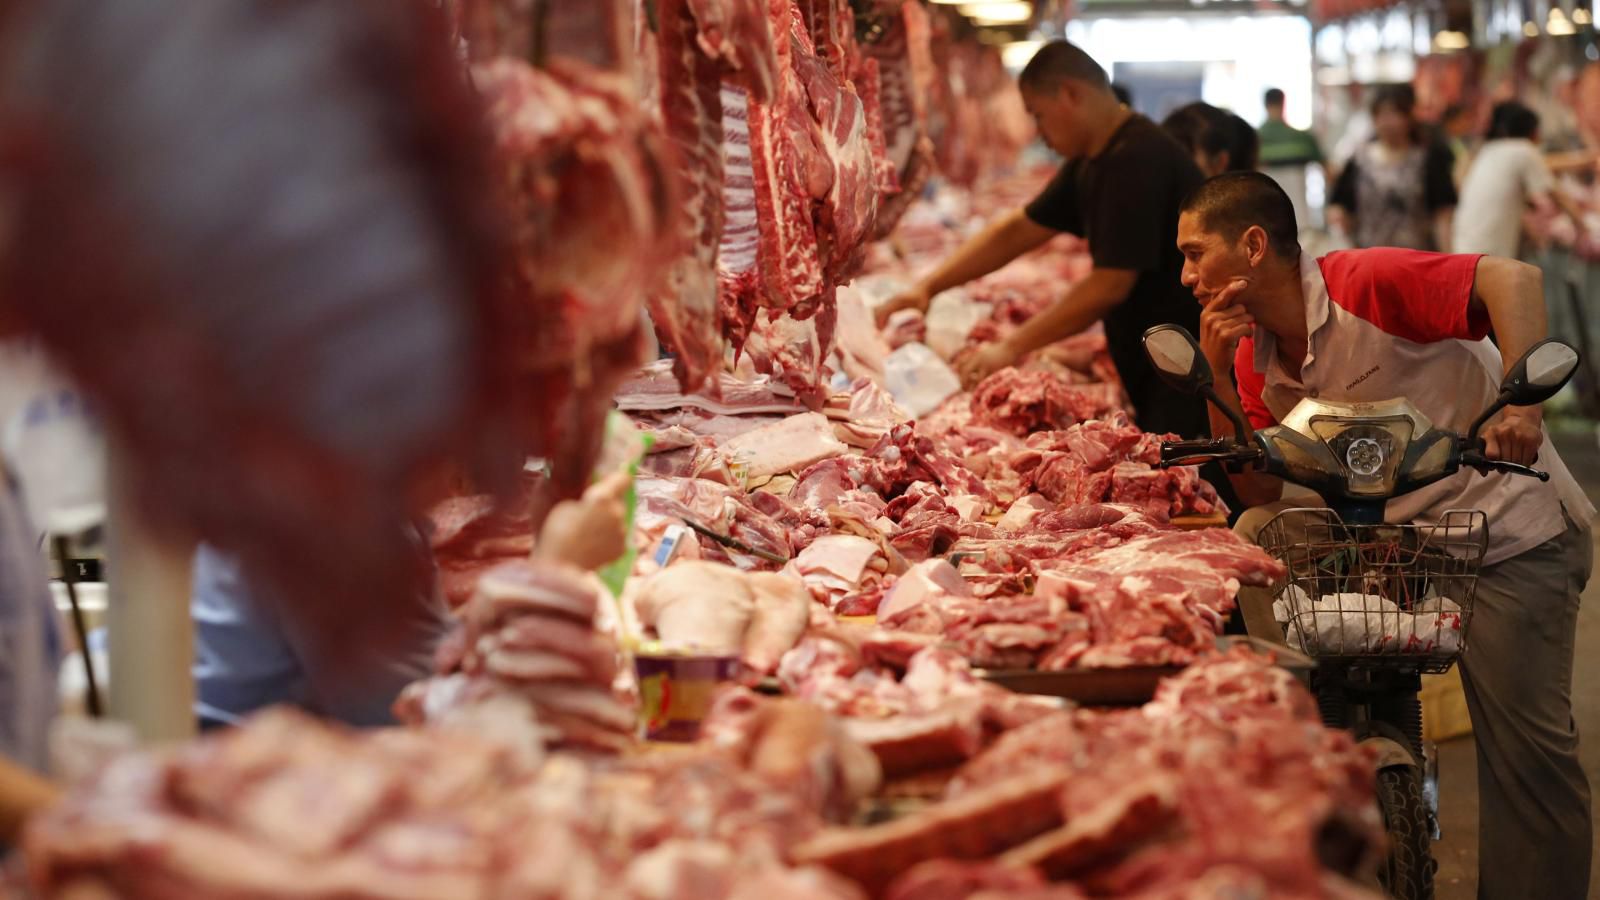 Biết Trung Quốc khan hiếm thịt lợn, Mỹ chất đống hàng trong kho chờ thời cơ